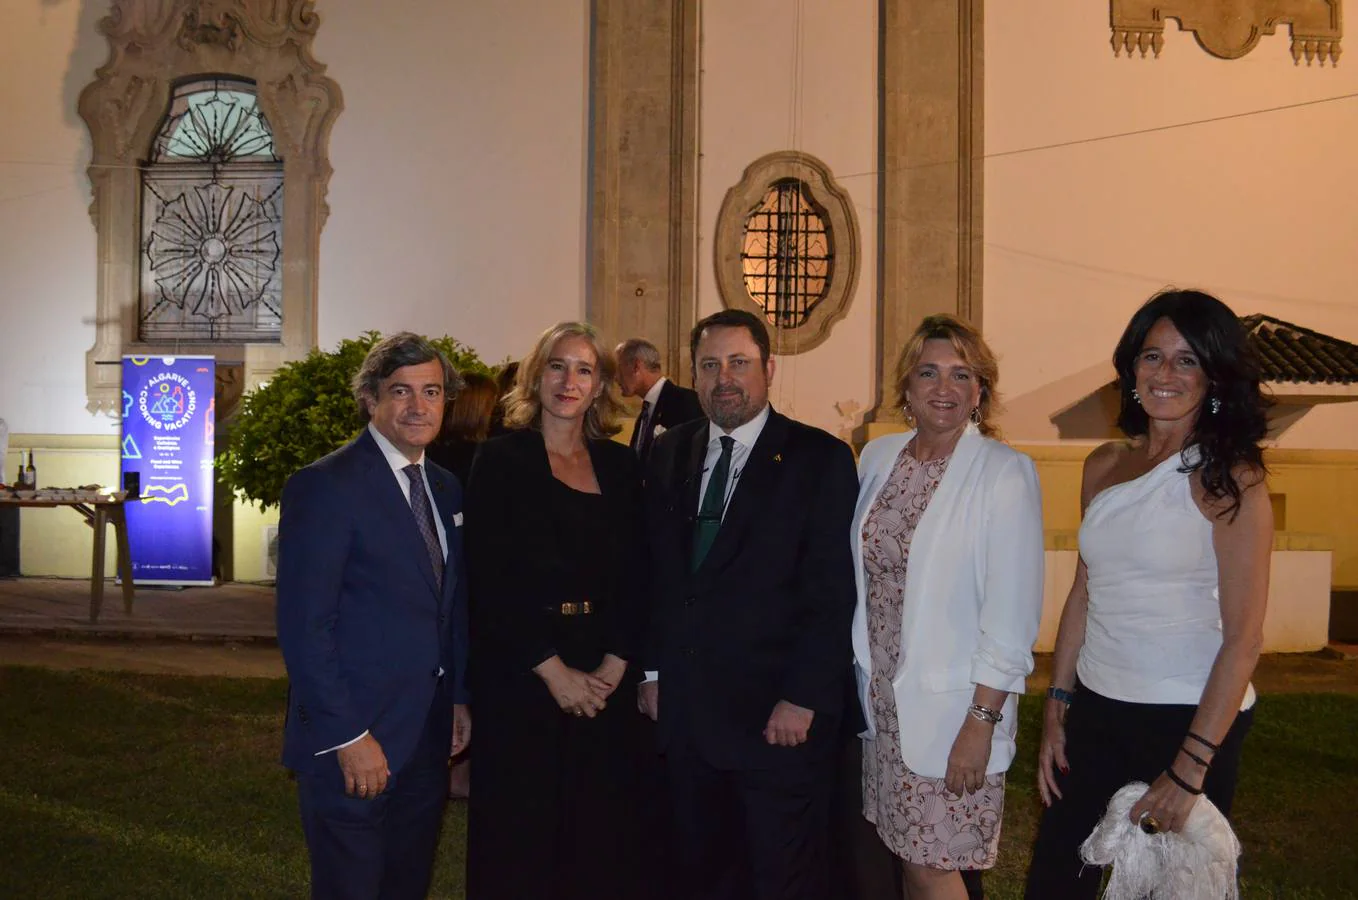 Benjamín Muñoz, Cónsul de Guatemala, Mª del Monte Pérez, Carlos Montesa, Cónsul de Suecia, Mónica Cauzo y Belén MIranda